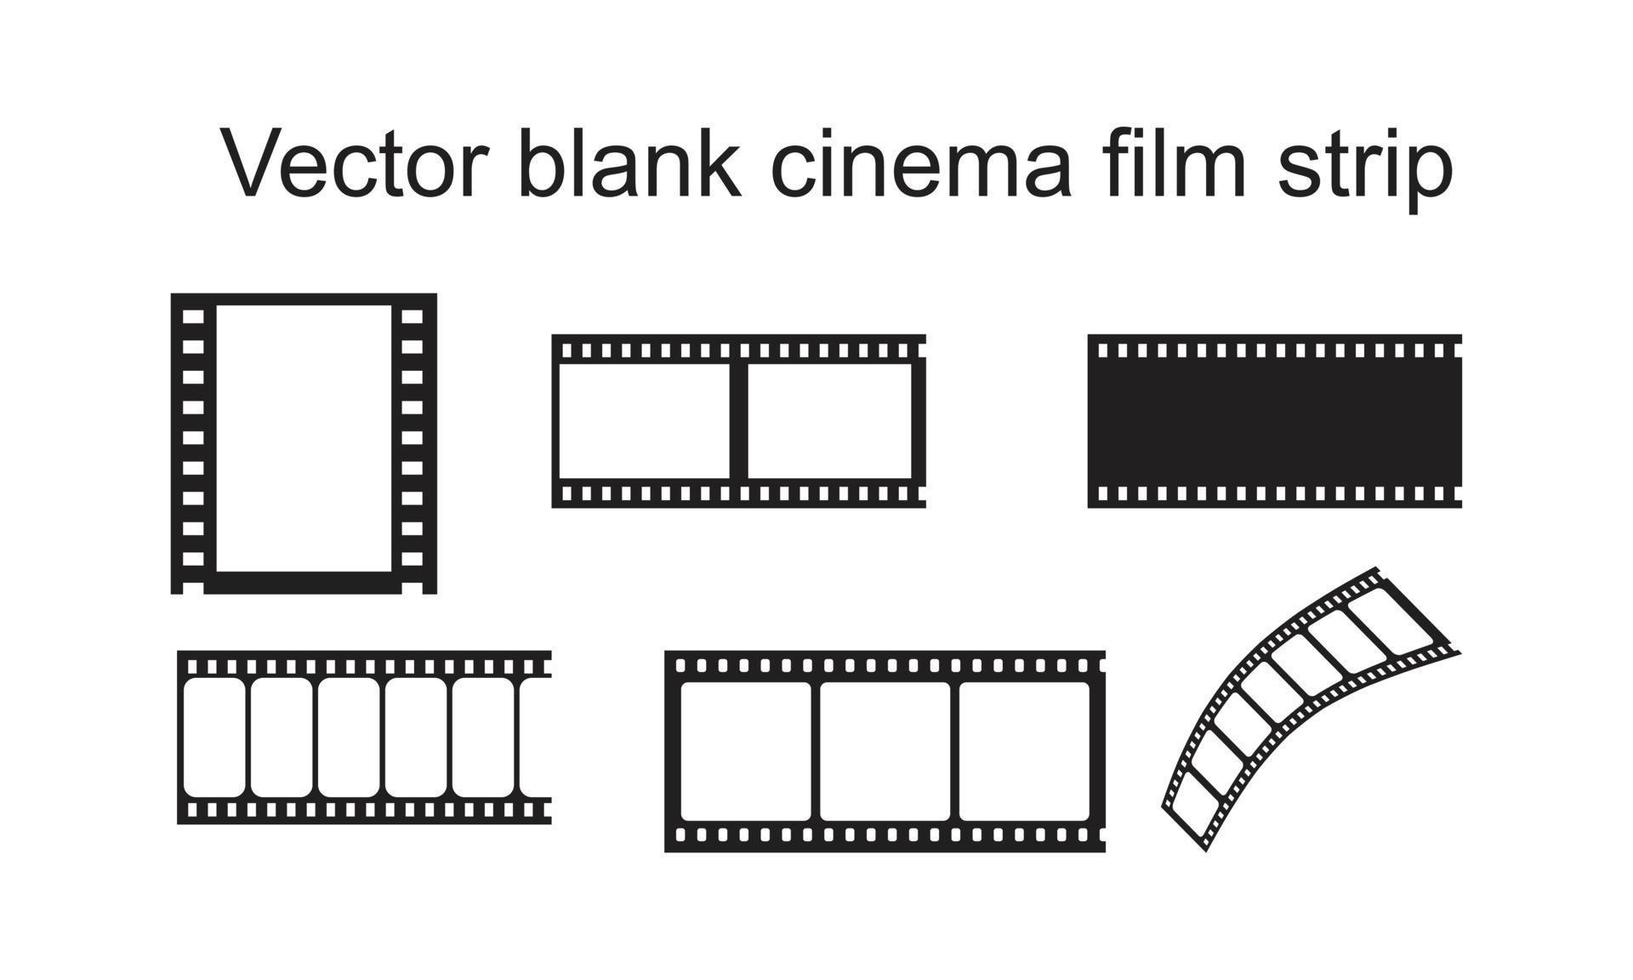 modèle d'icône d'histoire de film de cinéma vierge vectoriel couleur noire modifiable. Image vectorielle illustration de vecteur plat de symbole d'icône d'histoire de film de cinéma vierge pour la conception graphique et web.